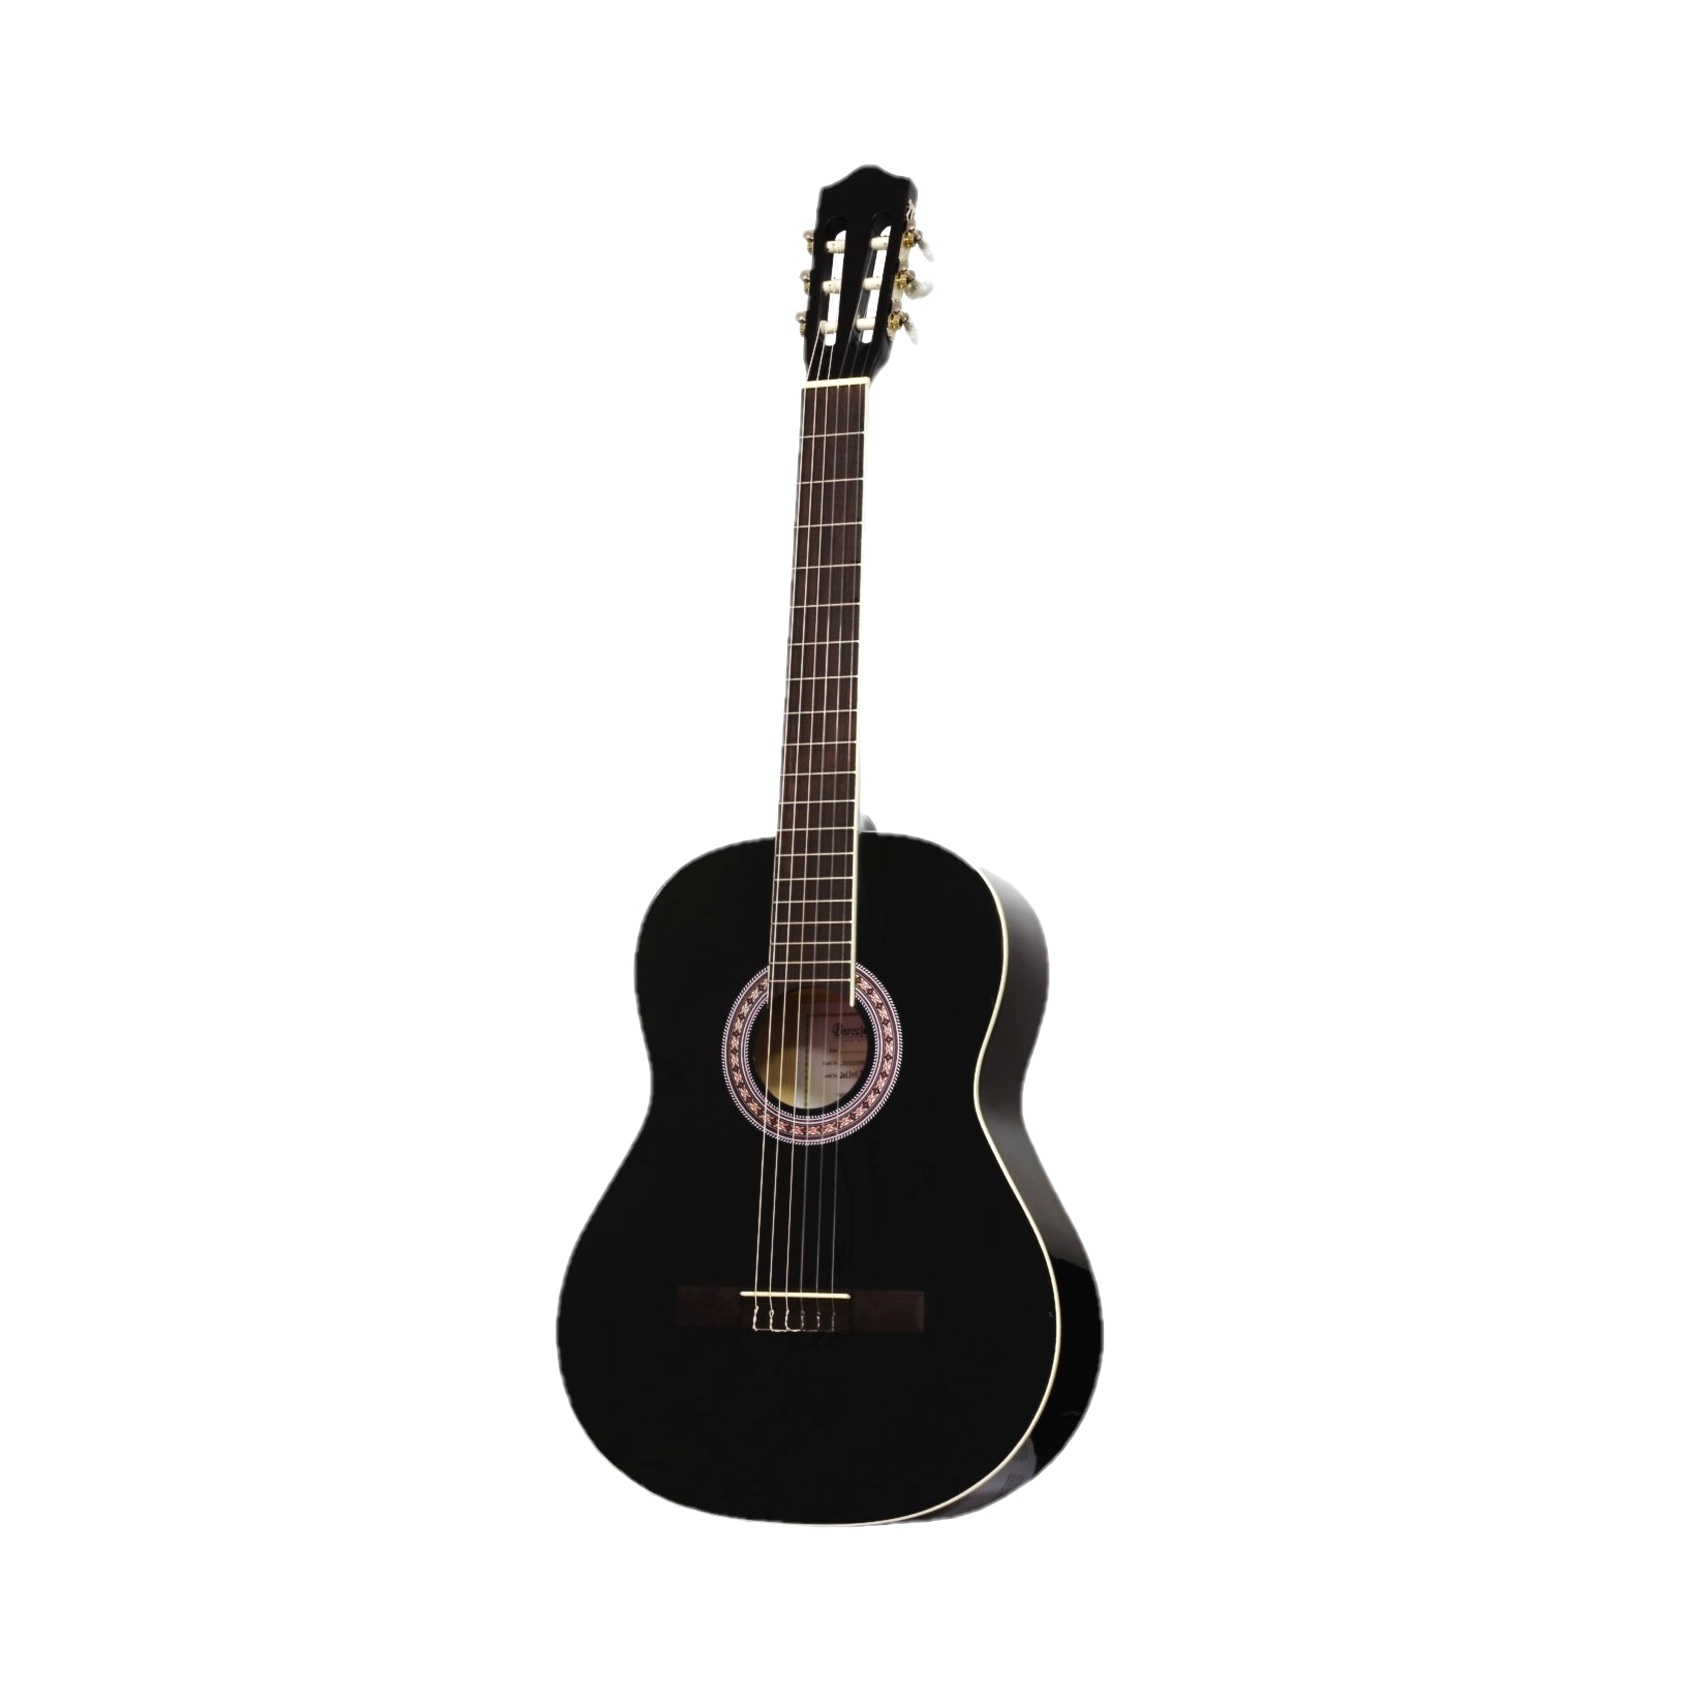 BARCELONA CG36BK 3/4  классическая гитара, 3/4, анкер, цвет чёрный глянцевый